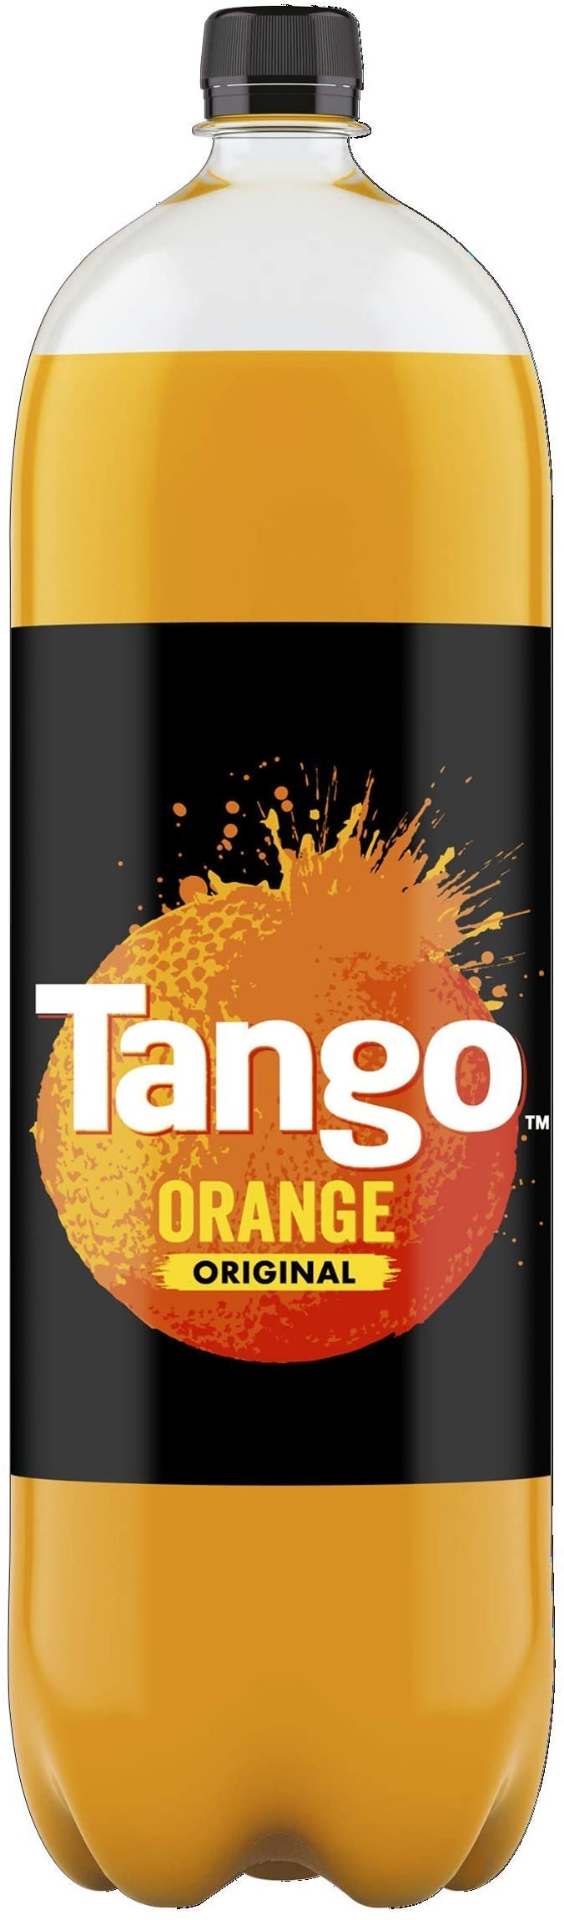 Picture of Tango Orange 1.5L